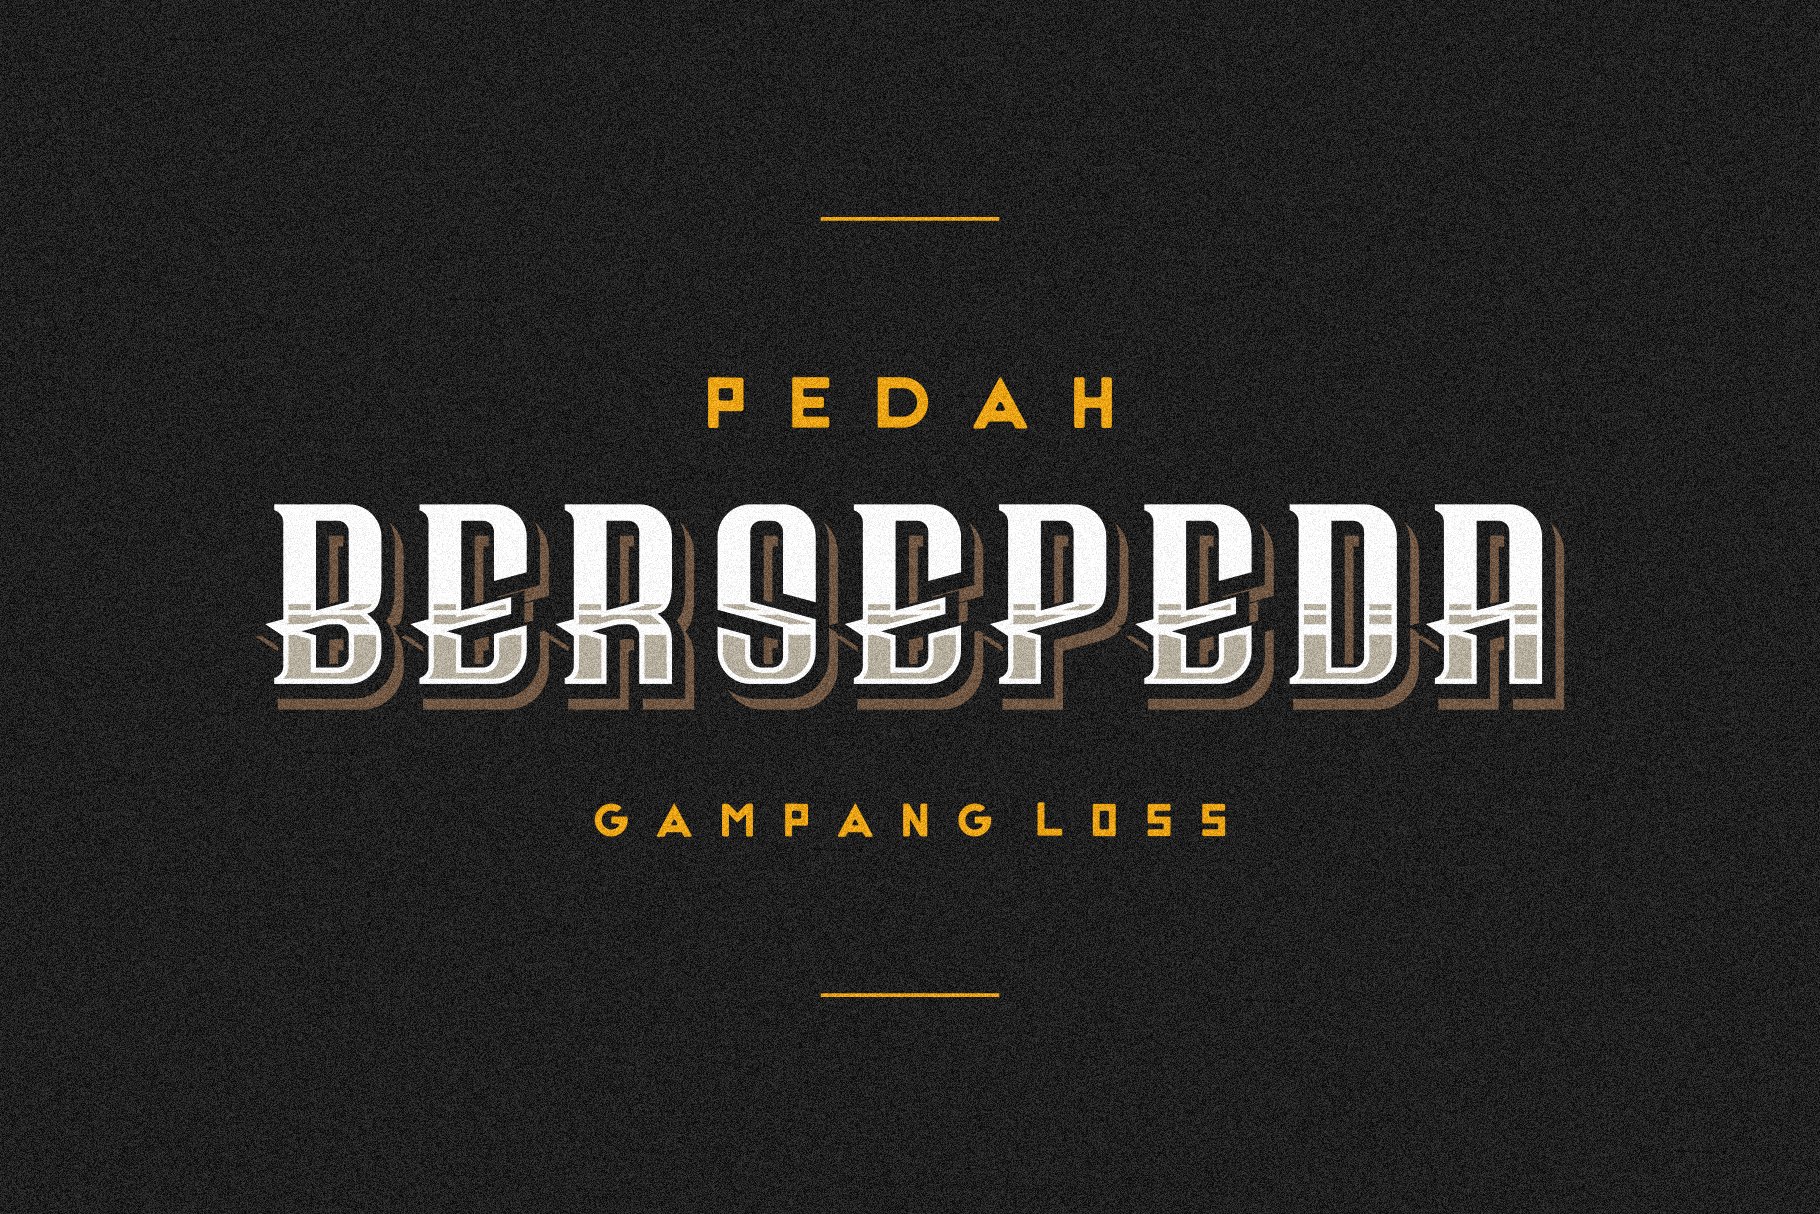 Bersepeda Font Vintage Modern cover image.